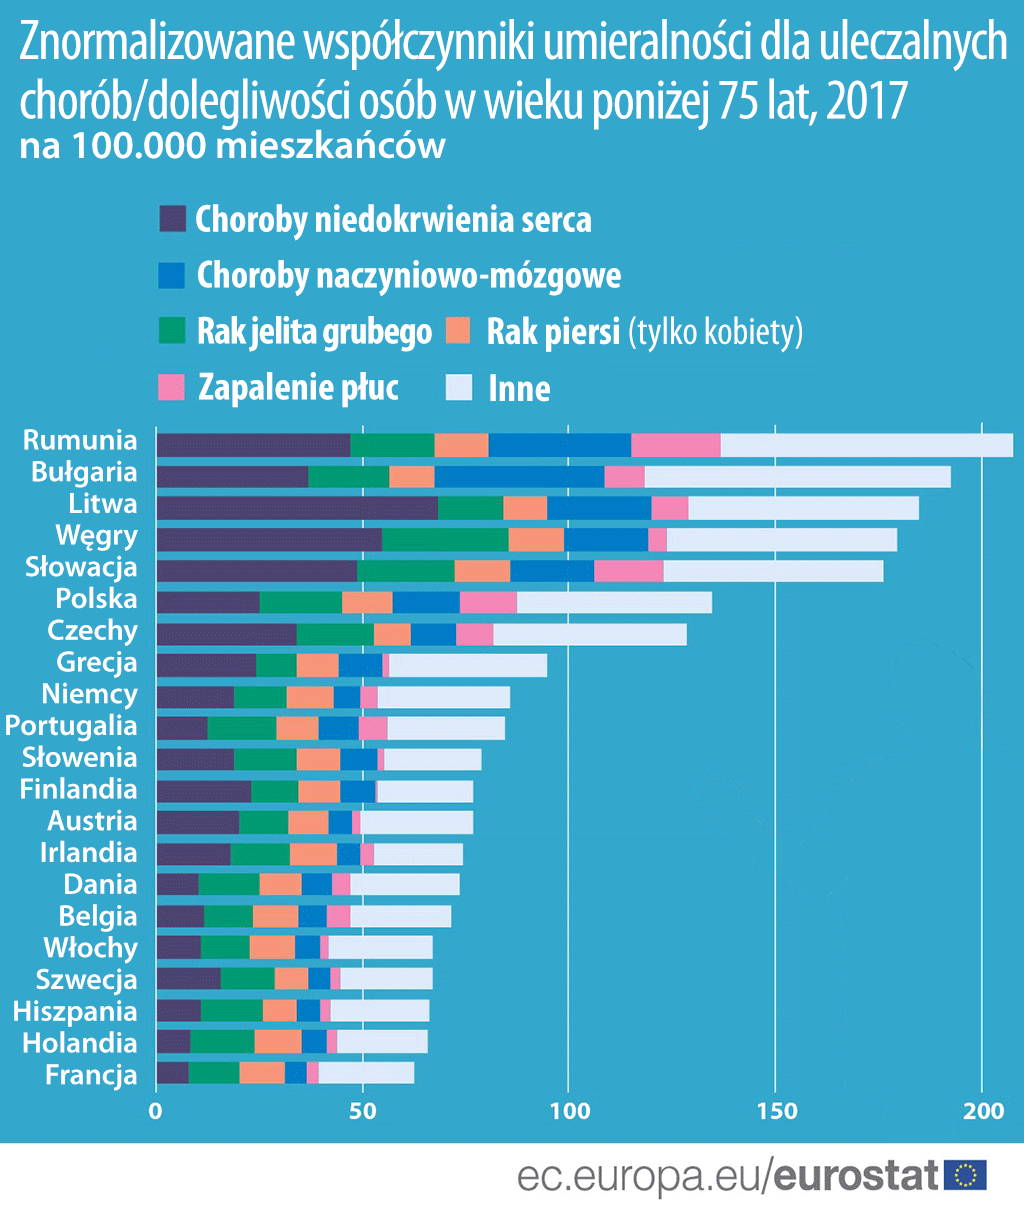 umieralność na uleczalne choroby w krajach Europa